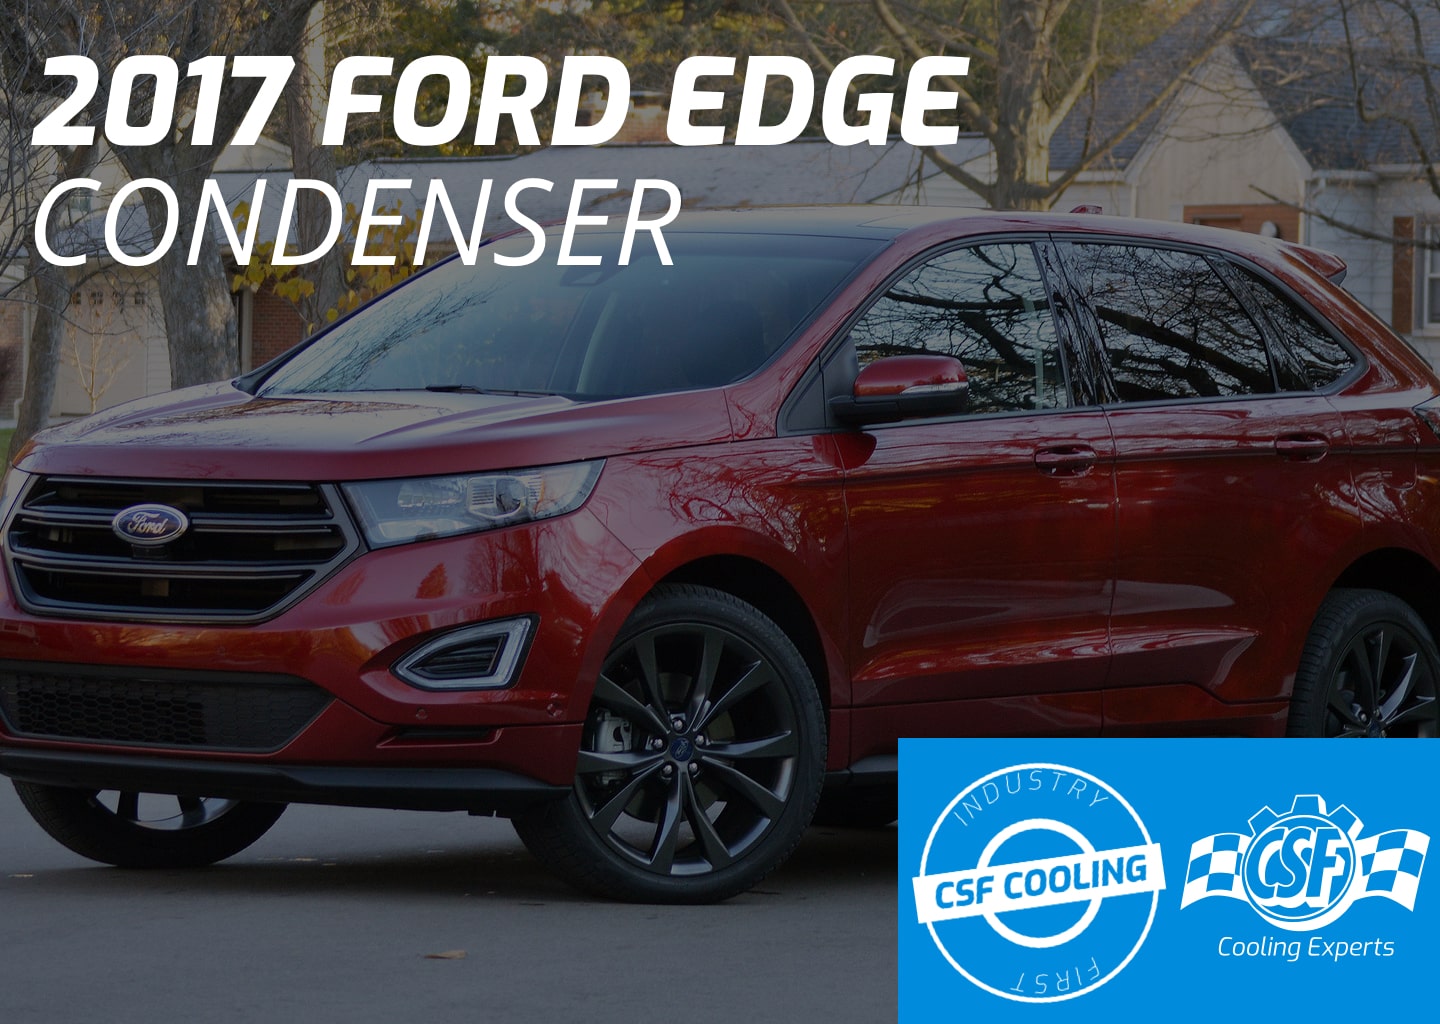 2017 Ford Edge Condenser